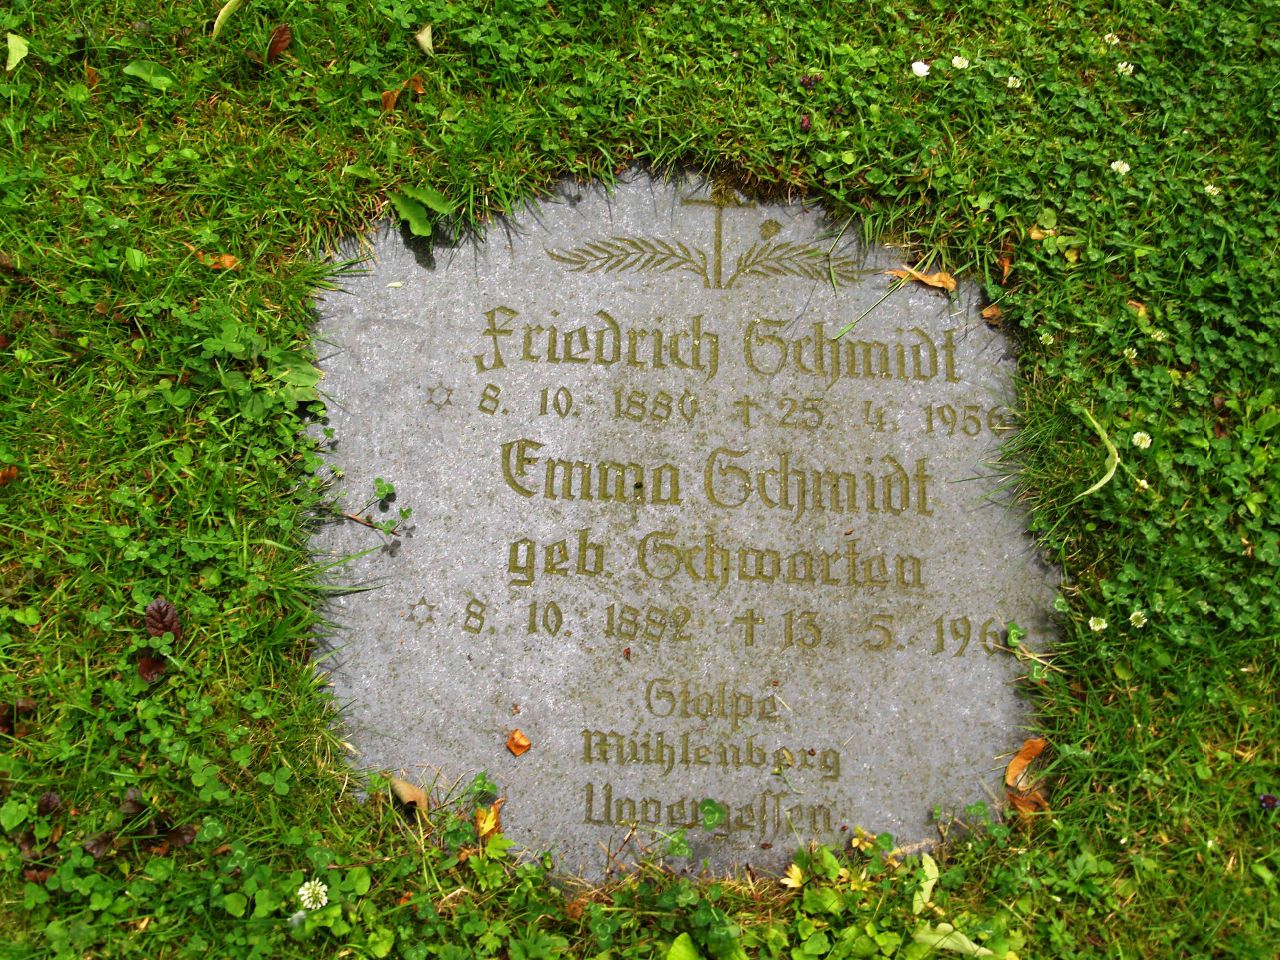 Grabstein von Friedrich und Emma Schmidt